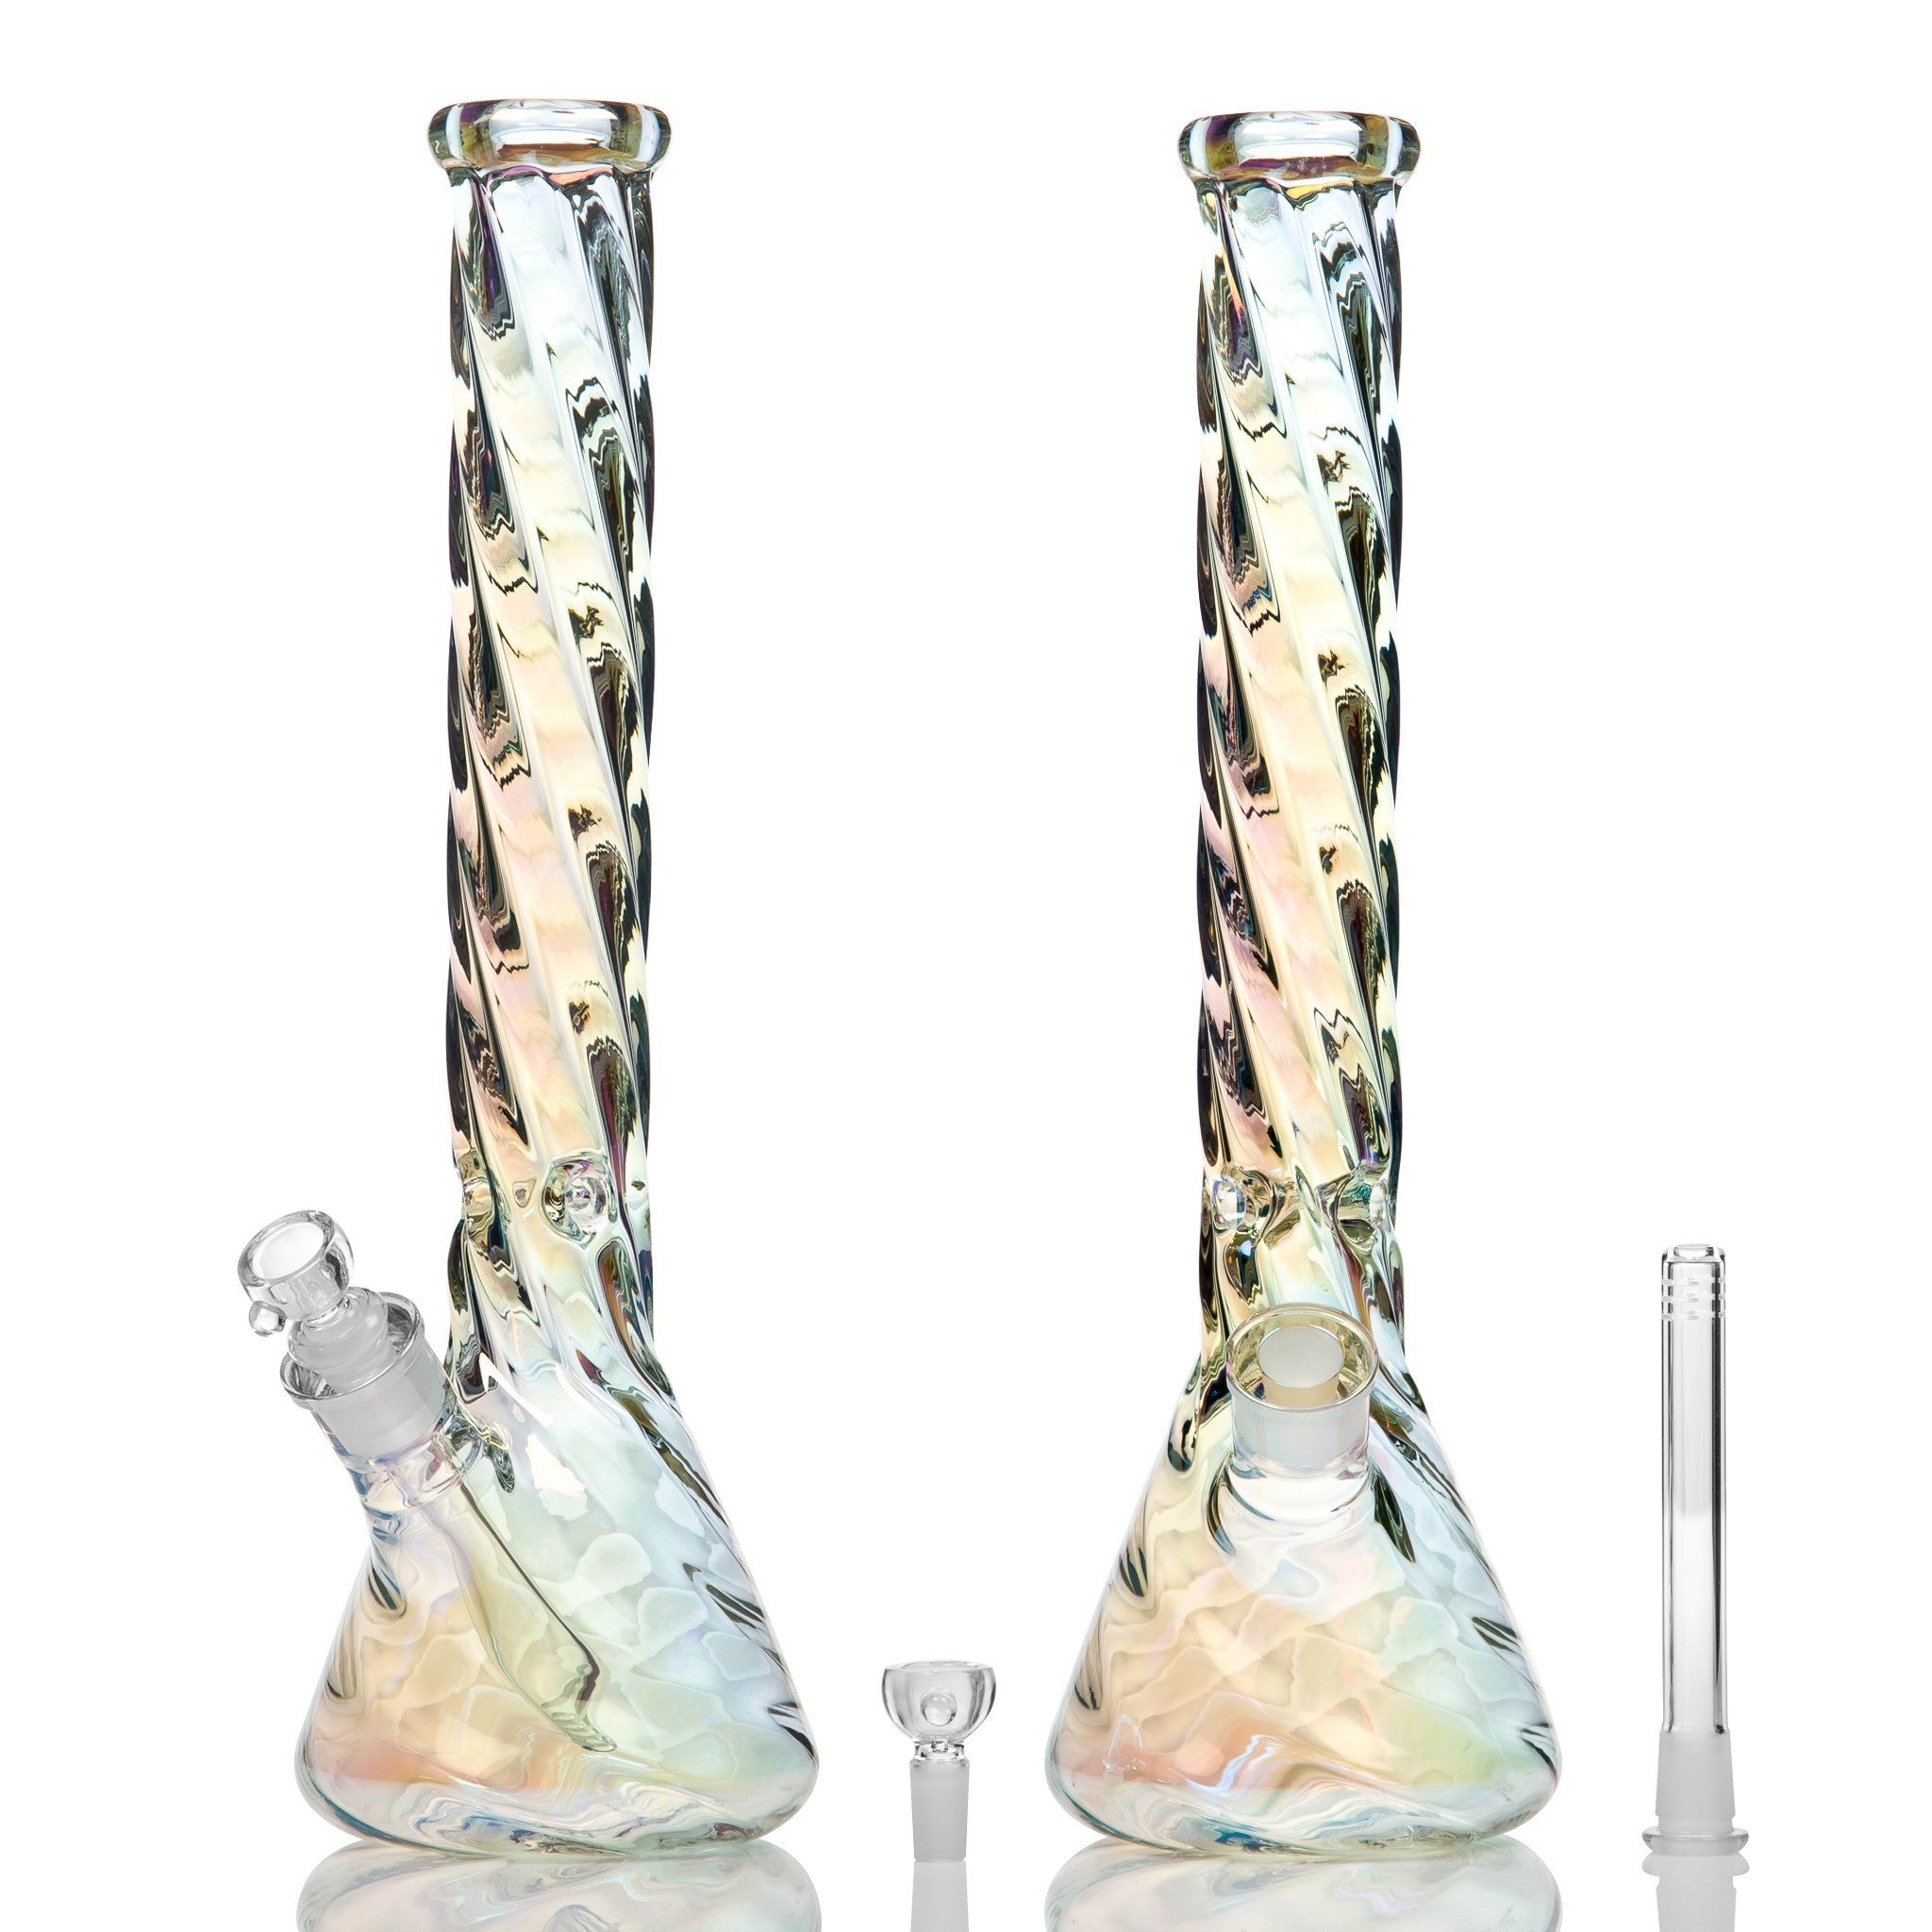 Chromatic Twist Glass Beaker Bong 41cm